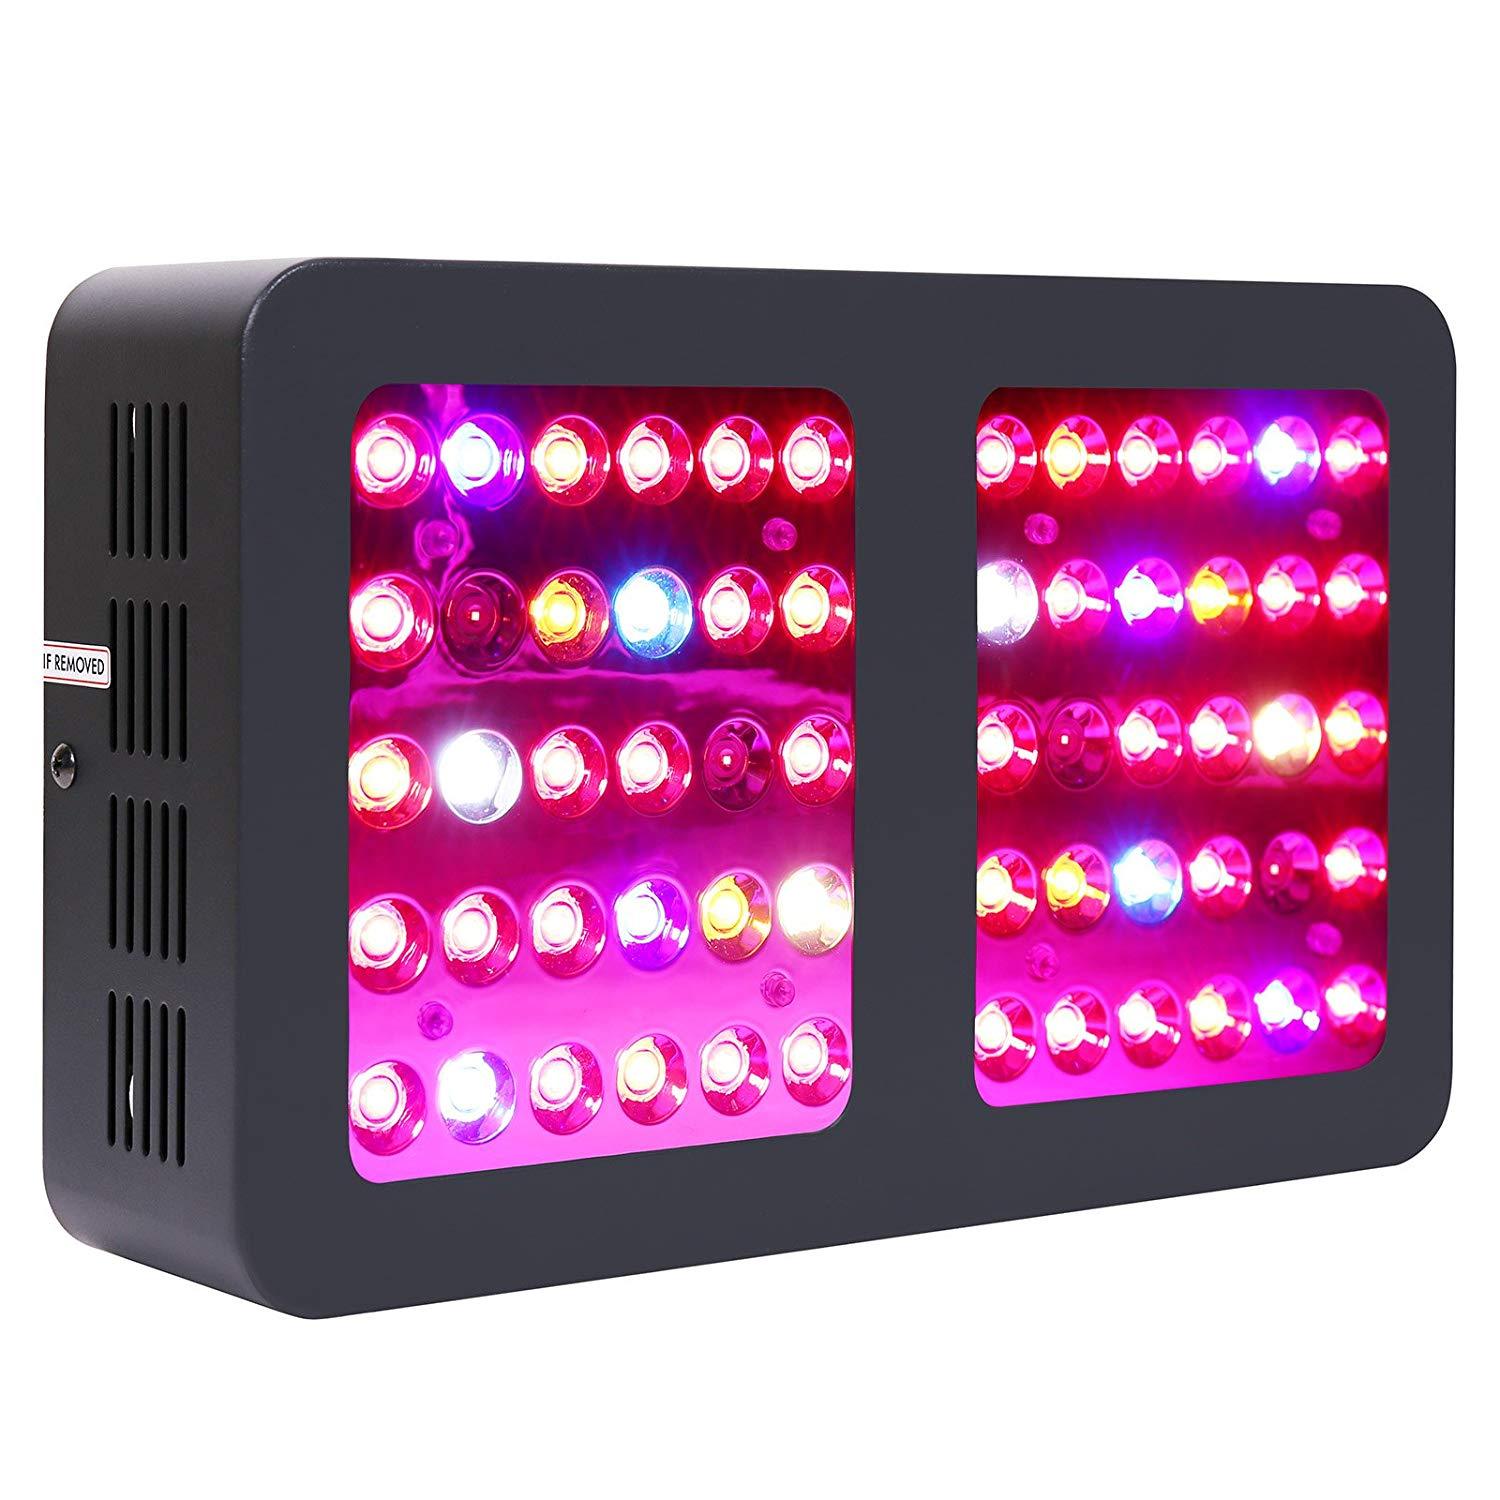 VIPARSPECTRA 300W LED Grow Light Full Spectrum